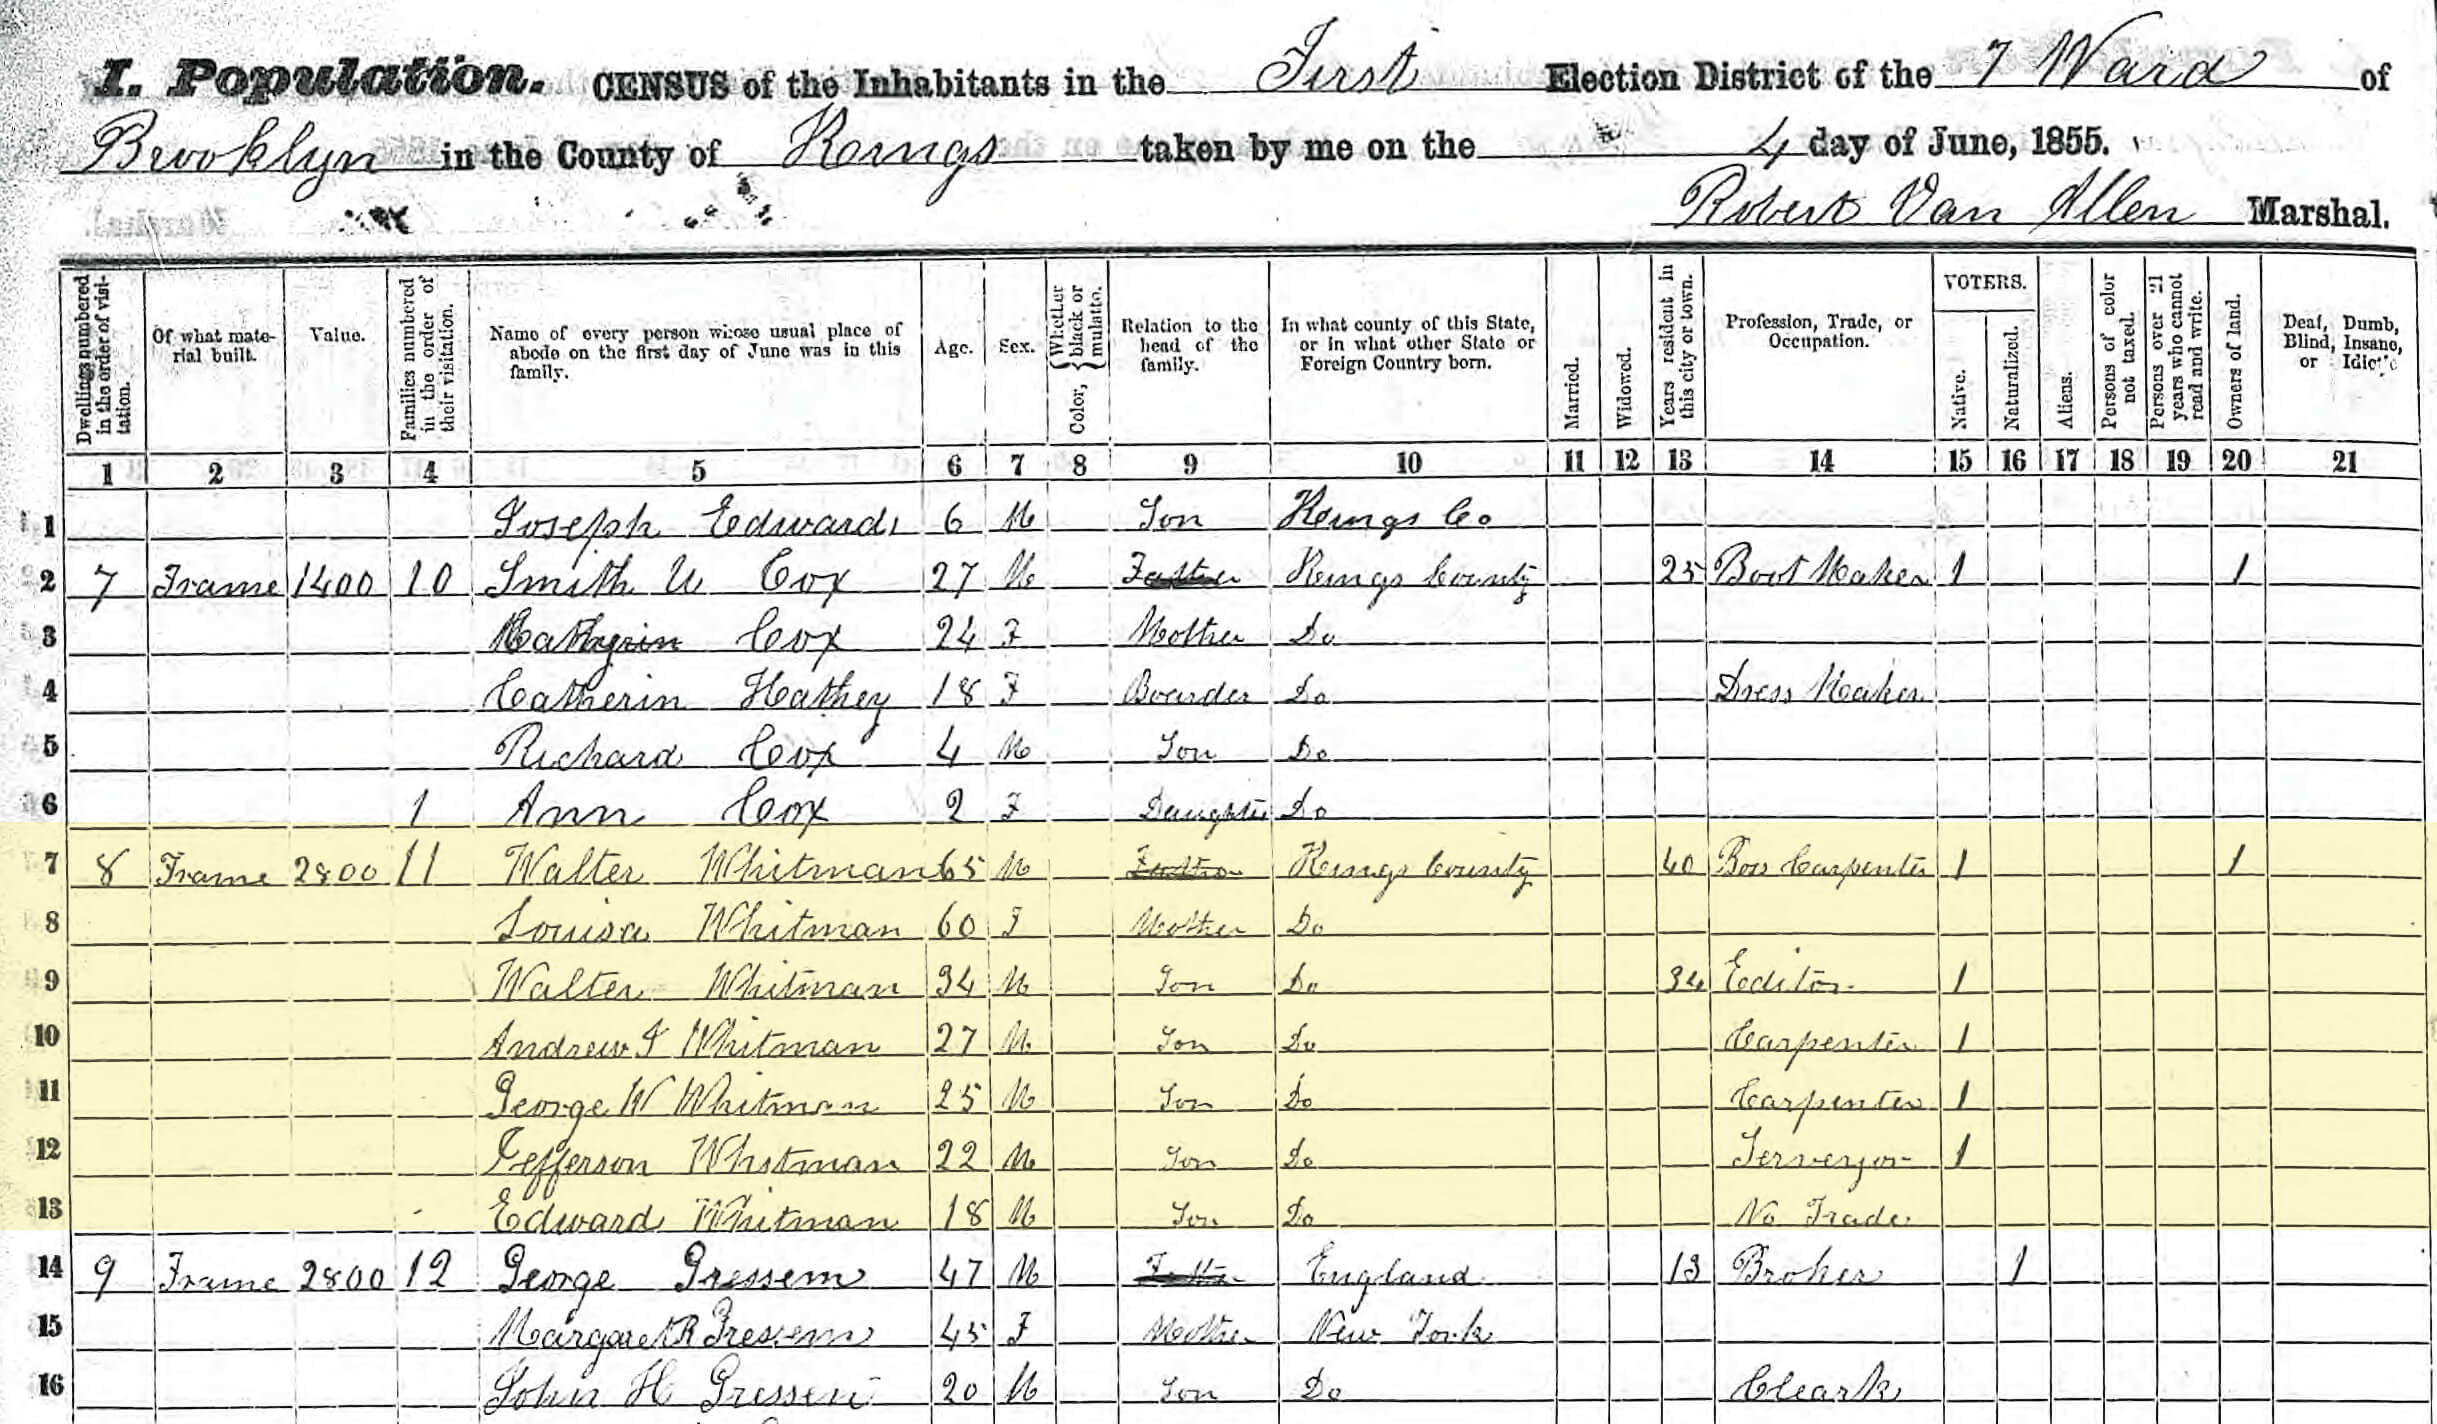 walt whitman 99 ryerson wallabout 1855 census